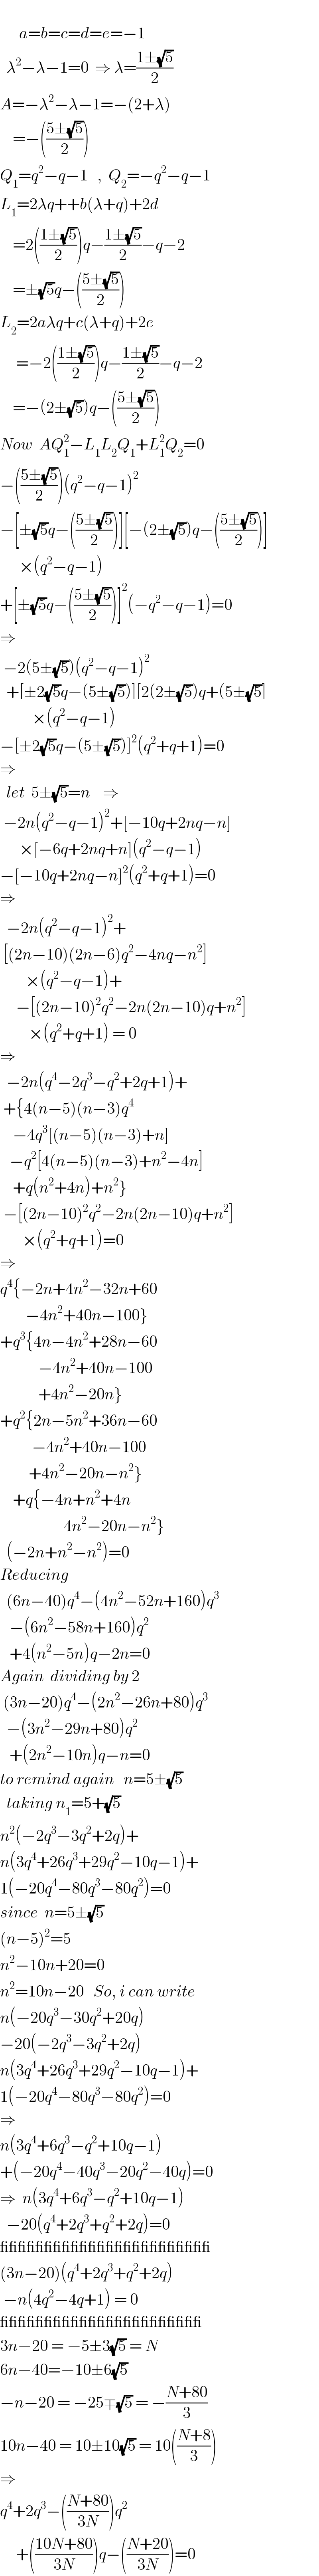         a=b=c=d=e=−1    λ^2 −λ−1=0  ⇒ λ=((1±(√5))/2)  A=−λ^2 −λ−1=−(2+λ)      =−(((5±(√5))/2))  Q_1 =q^2 −q−1   ,  Q_2 =−q^2 −q−1  L_1 =2λq++b(λ+q)+2d      =2(((1±(√5))/2))q−((1±(√5))/2)−q−2      =±(√5)q−(((5±(√5))/2))  L_2 =2aλq+c(λ+q)+2e       =−2(((1±(√5))/2))q−((1±(√5))/2)−q−2      =−(2±(√5))q−(((5±(√5))/2))  Now  AQ_1 ^2 −L_1 L_2 Q_1 +L_1 ^2 Q_2 =0  −(((5±(√5))/2))(q^2 −q−1)^2   −[±(√5)q−(((5±(√5))/2))][−(2±(√5))q−(((5±(√5))/2))]        ×(q^2 −q−1)  +[±(√5)q−(((5±(√5))/2))]^2 (−q^2 −q−1)=0  ⇒   −2(5±(√5))(q^2 −q−1)^2     +[±2(√5)q−(5±(√5))][2(2±(√5))q+(5±(√5)]            ×(q^2 −q−1)  −[±2(√5)q−(5±(√5))]^2 (q^2 +q+1)=0  ⇒    let  5±(√5)=n    ⇒   −2n(q^2 −q−1)^2 +[−10q+2nq−n]        ×[−6q+2nq+n](q^2 −q−1)  −[−10q+2nq−n]^2 (q^2 +q+1)=0  ⇒    −2n(q^2 −q−1)^2 +   [(2n−10)(2n−6)q^2 −4nq−n^2 ]          ×(q^2 −q−1)+       −[(2n−10)^2 q^2 −2n(2n−10)q+n^2 ]           ×(q^2 +q+1) = 0  ⇒    −2n(q^4 −2q^3 −q^2 +2q+1)+   +{4(n−5)(n−3)q^4       −4q^3 [(n−5)(n−3)+n]     −q^2 [4(n−5)(n−3)+n^2 −4n]      +q(n^2 +4n)+n^2 }   −[(2n−10)^2 q^2 −2n(2n−10)q+n^2 ]         ×(q^2 +q+1)=0  ⇒  q^4 {−2n+4n^2 −32n+60          −4n^2 +40n−100}  +q^3 {4n−4n^2 +28n−60              −4n^2 +40n−100              +4n^2 −20n}  +q^2 {2n−5n^2 +36n−60            −4n^2 +40n−100           +4n^2 −20n−n^2 }      +q{−4n+n^2 +4n                      4n^2 −20n−n^2 }    (−2n+n^2 −n^2 )=0  Reducing    (6n−40)q^4 −(4n^2 −52n+160)q^3      −(6n^2 −58n+160)q^2      +4(n^2 −5n)q−2n=0  Again  dividing by 2   (3n−20)q^4 −(2n^2 −26n+80)q^3     −(3n^2 −29n+80)q^2      +(2n^2 −10n)q−n=0  to remind again   n=5±(√5)    taking n_1 =5+(√5)  n^2 (−2q^3 −3q^2 +2q)+  n(3q^4 +26q^3 +29q^2 −10q−1)+  1(−20q^4 −80q^3 −80q^2 )=0  since  n=5±(√5)  (n−5)^2 =5  n^2 −10n+20=0  n^2 =10n−20   So, i can write  n(−20q^3 −30q^2 +20q)  −20(−2q^3 −3q^2 +2q)  n(3q^4 +26q^3 +29q^2 −10q−1)+  1(−20q^4 −80q^3 −80q^2 )=0  ⇒  n(3q^4 +6q^3 −q^2 +10q−1)  +(−20q^4 −40q^3 −20q^2 −40q)=0  ⇒  n(3q^4 +6q^3 −q^2 +10q−1)    −20(q^4 +2q^3 +q^2 +2q)=0  ________________________  (3n−20)(q^4 +2q^3 +q^2 +2q)   −n(4q^2 −4q+1) = 0  _______________________  3n−20 = −5±3(√5) = N  6n−40=−10±6(√5)  −n−20 = −25∓(√5) = −((N+80)/3)  10n−40 = 10±10(√5) = 10(((N+8)/3))  ⇒     q^4 +2q^3 −(((N+80)/(3N)))q^2        +(((10N+80)/(3N)))q−(((N+20)/(3N)))=0  